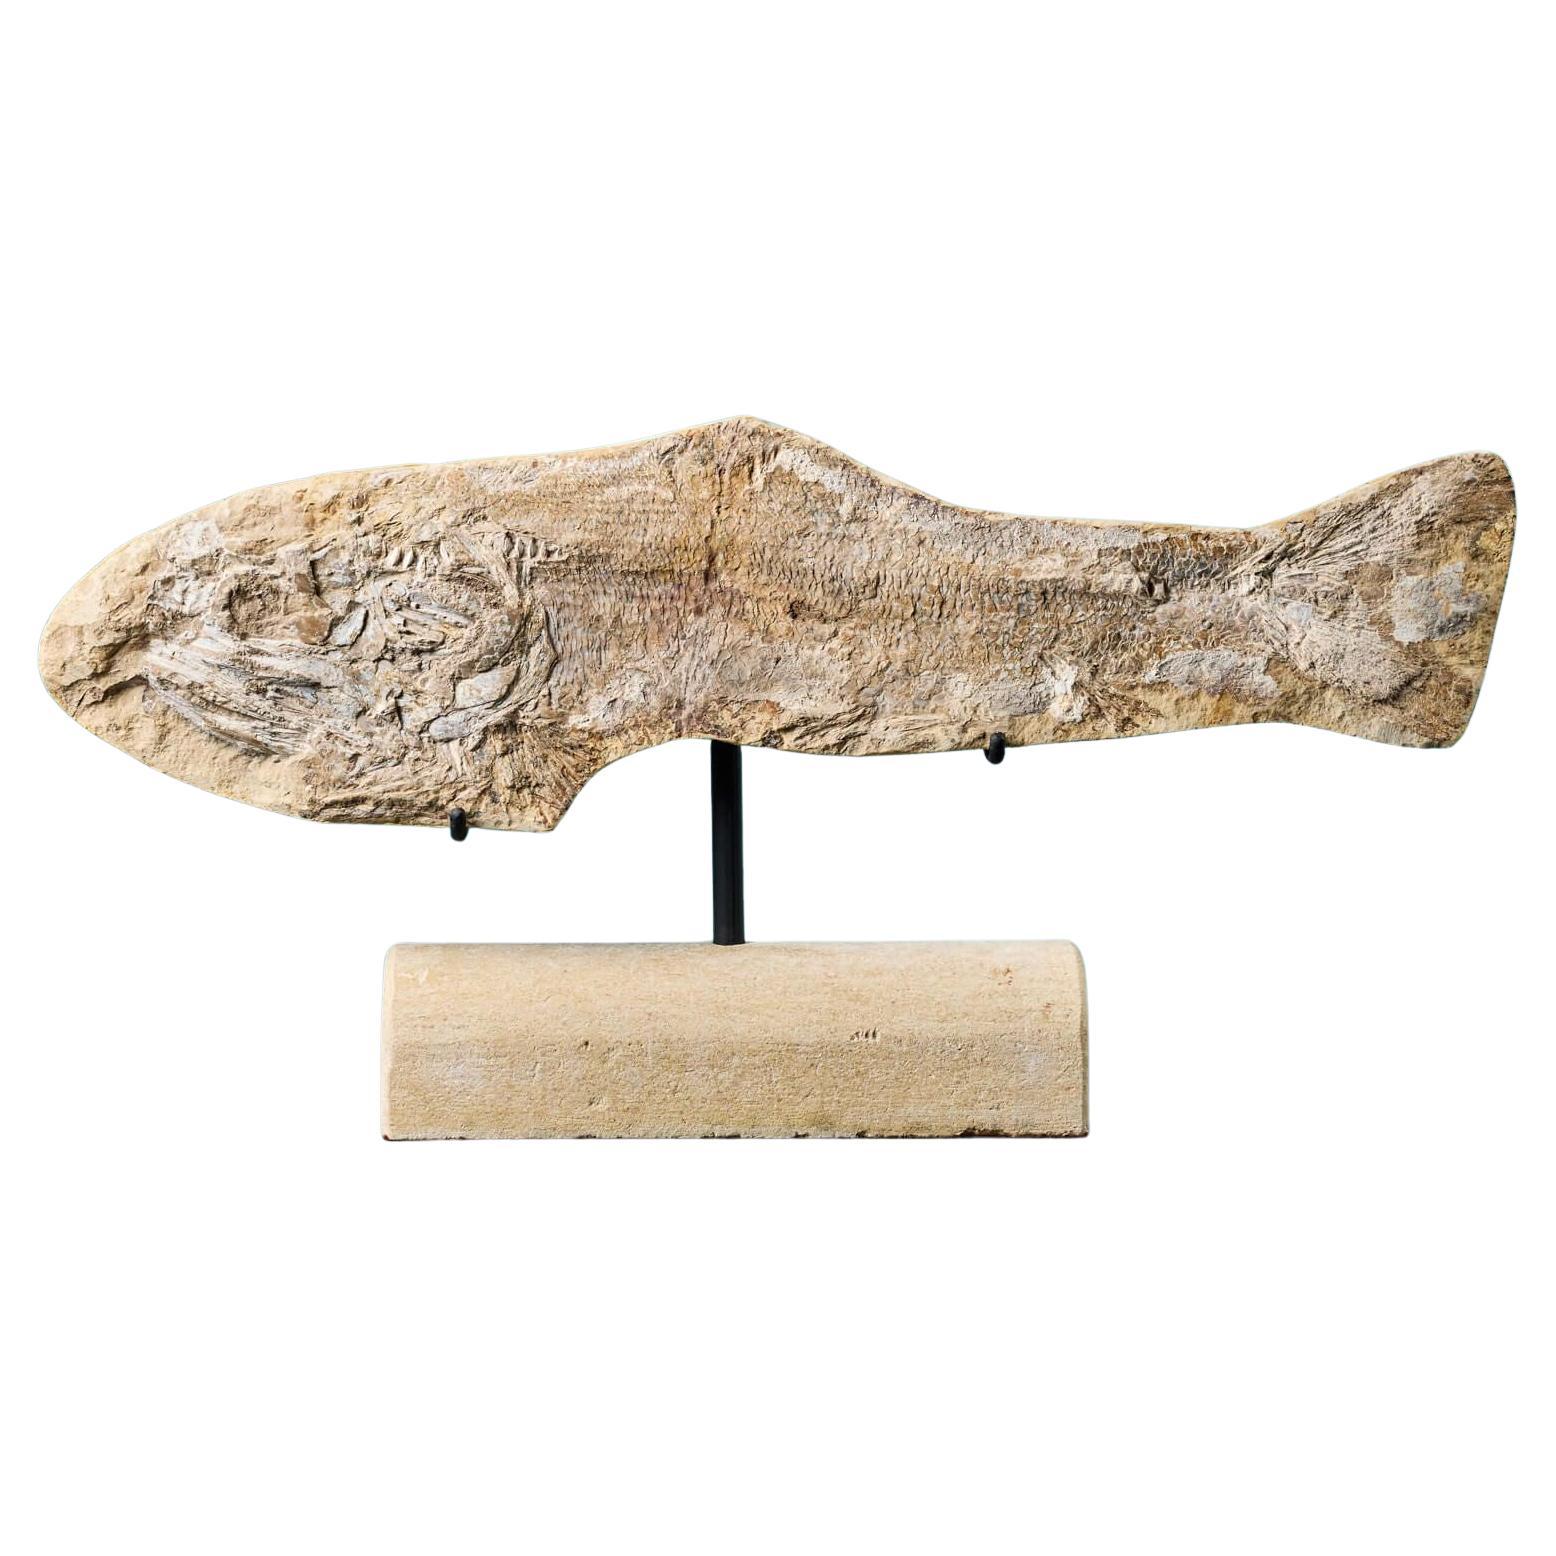 Prähistorisches Fossil-Fisch-Exemplar